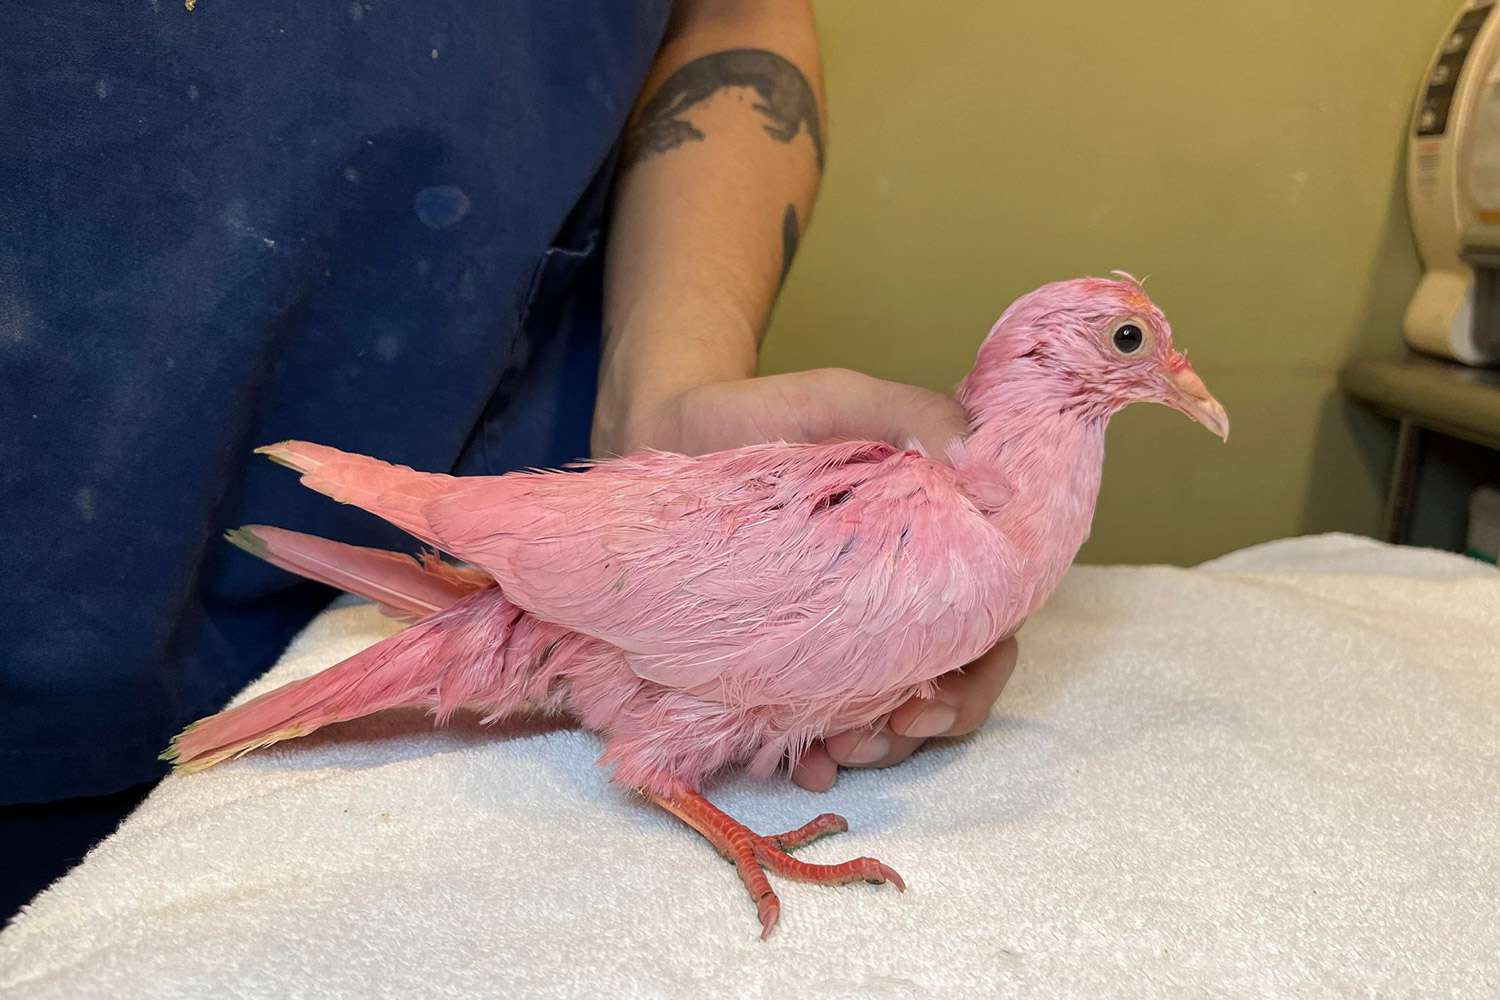 Animal Rescue ostrzega „Nigdy nie farbuj ptaka” po tym, jak „walczący” różowy gołąb został znaleziony błąkający się po Nowym Jorku